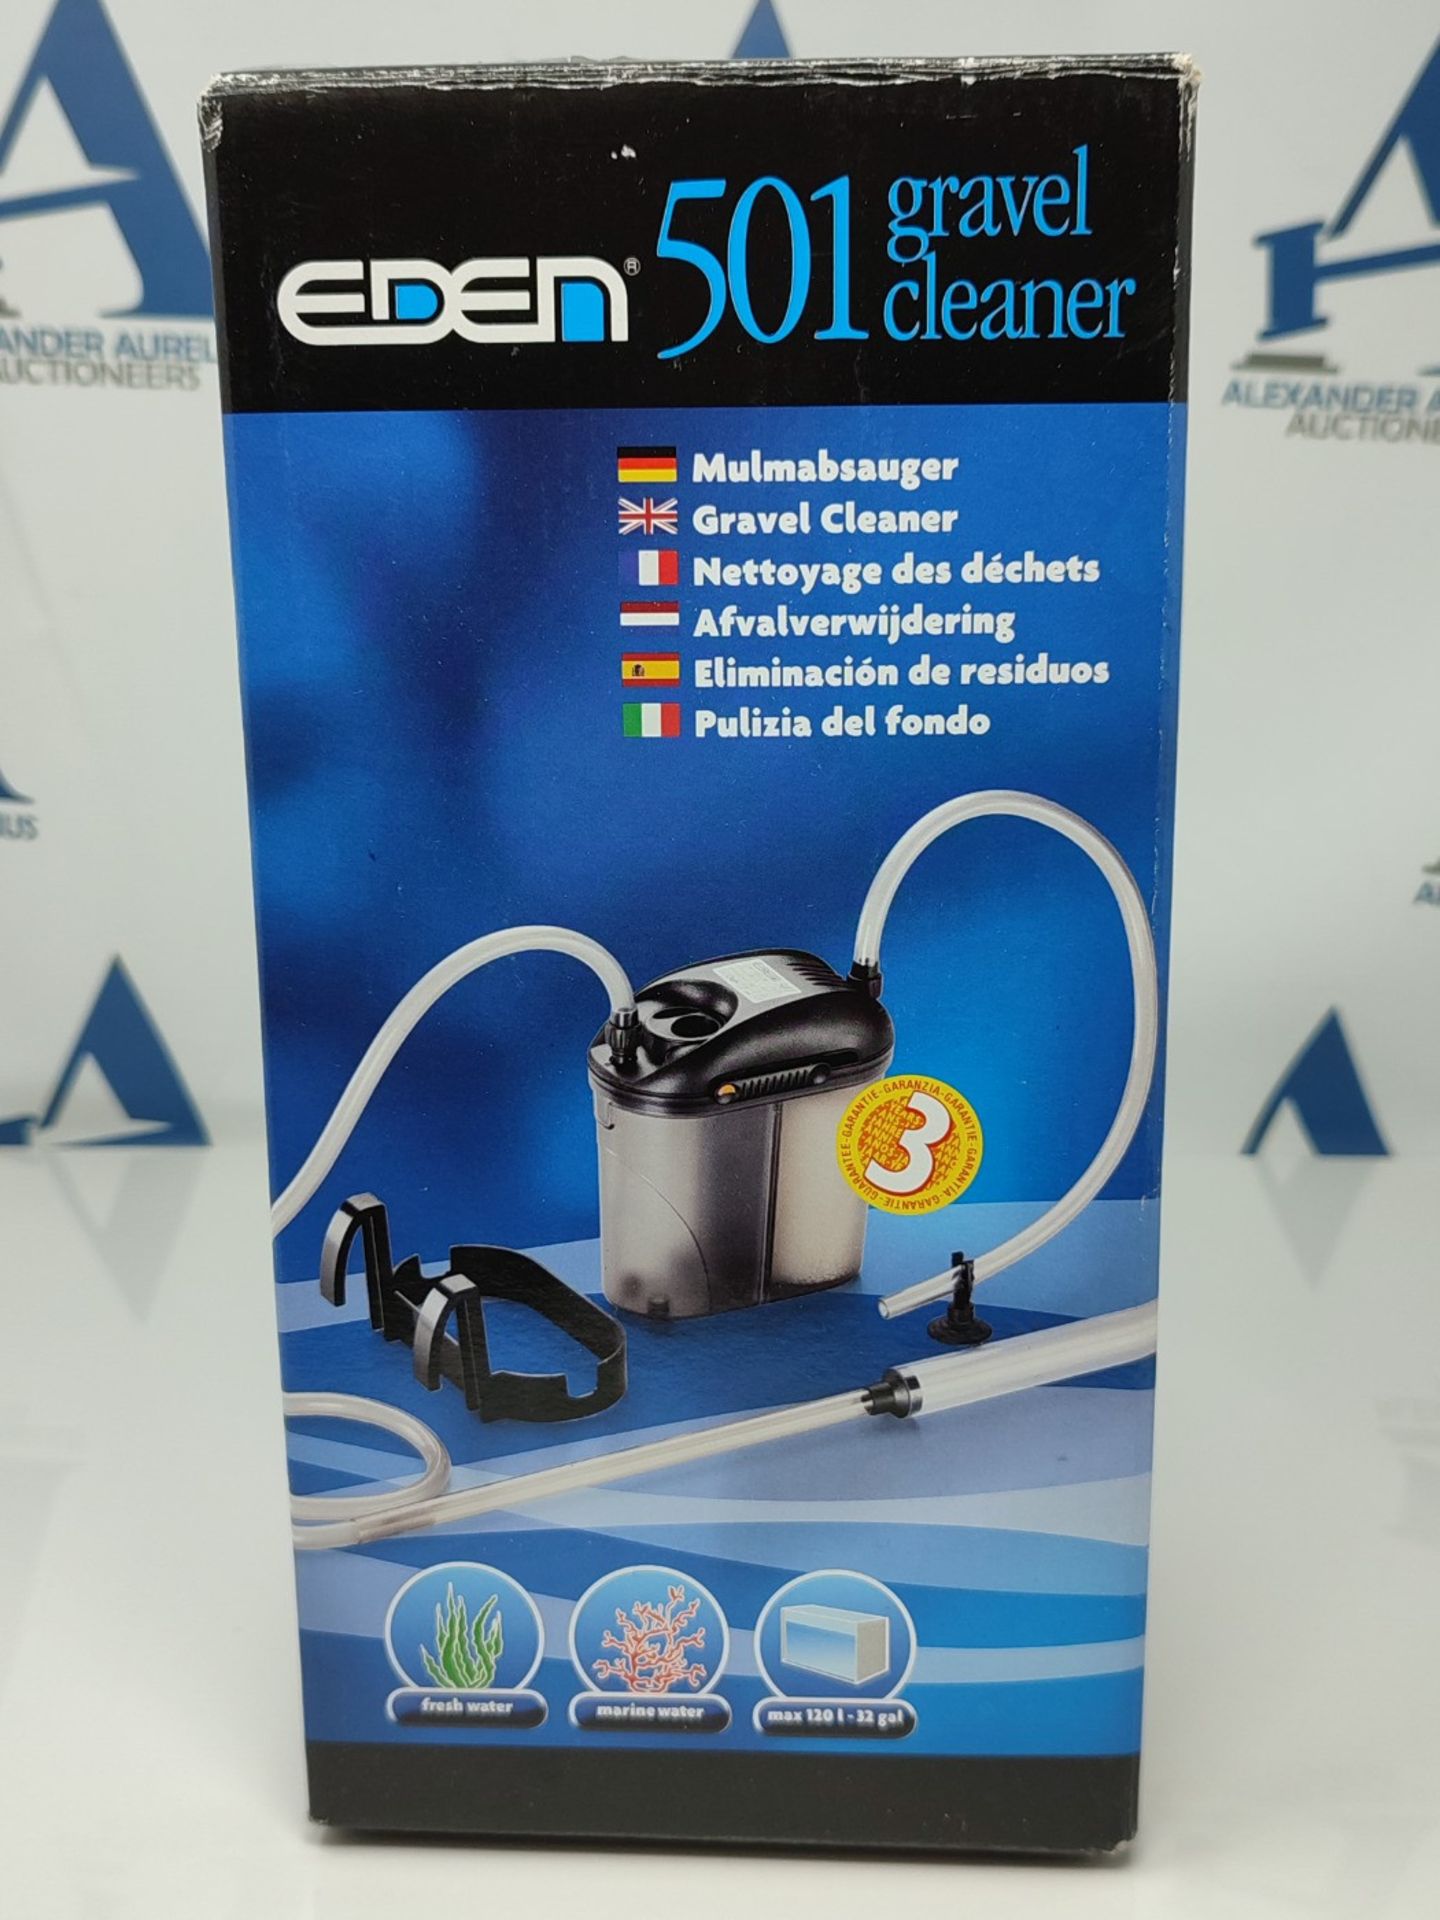 EDEN 57461 501 Gravel Cleaner - Gravel cleaner and sludge vacuum for suctioning mulm a - Bild 2 aus 3